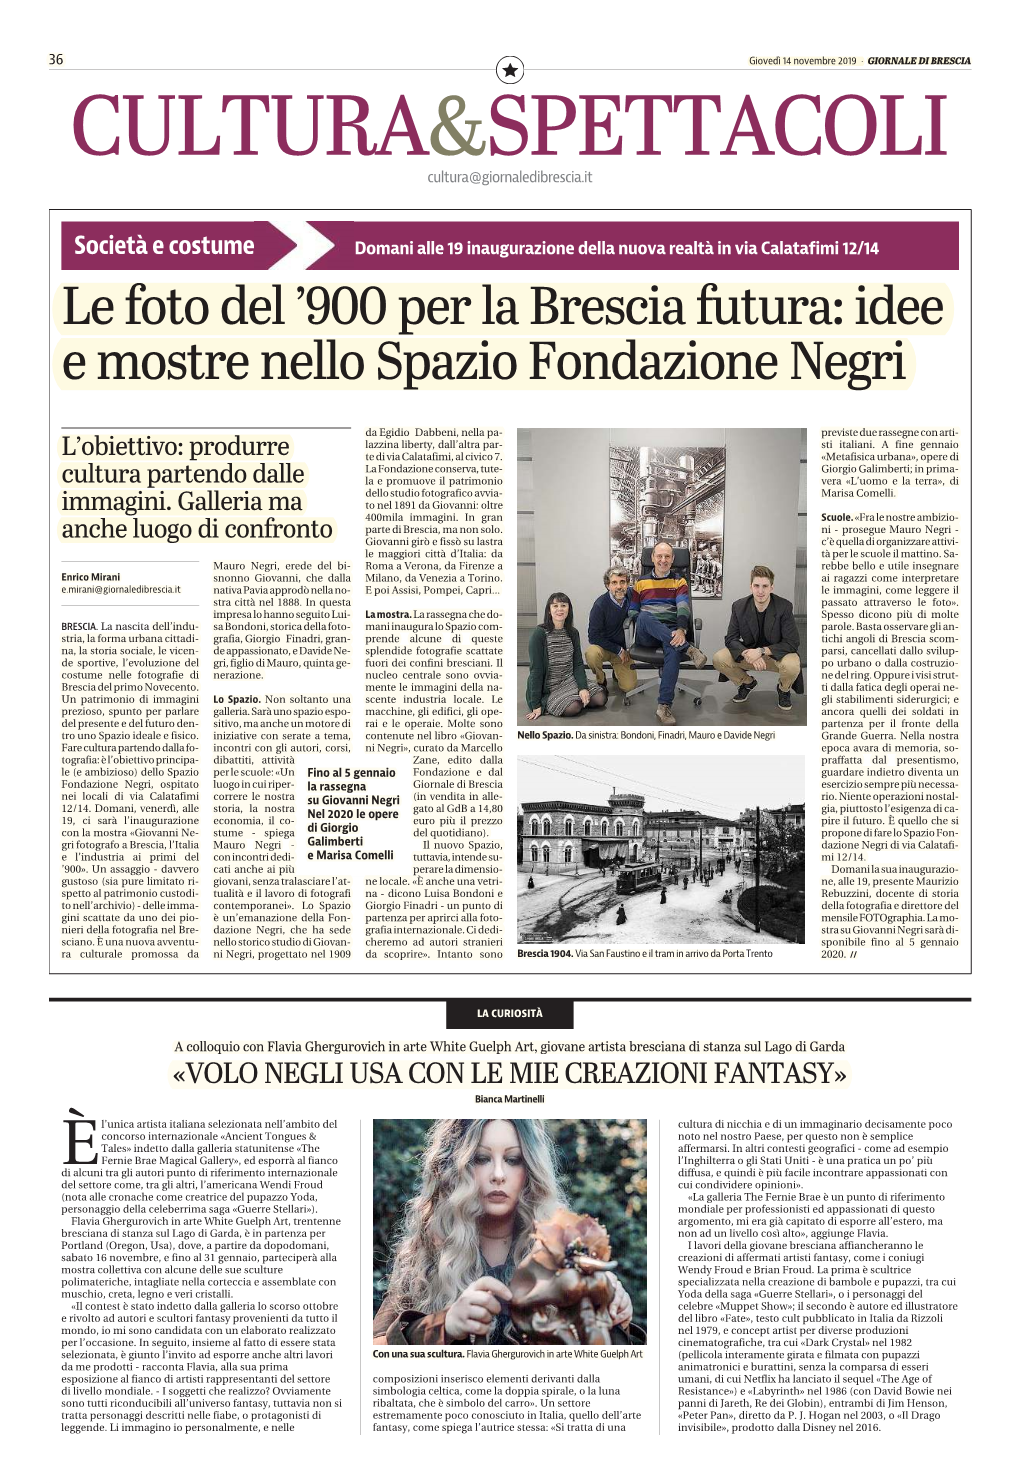 Le Foto Del '900 Per La Brescia Futura: Idee E Mostre Nello Spazio Fondazione Negri